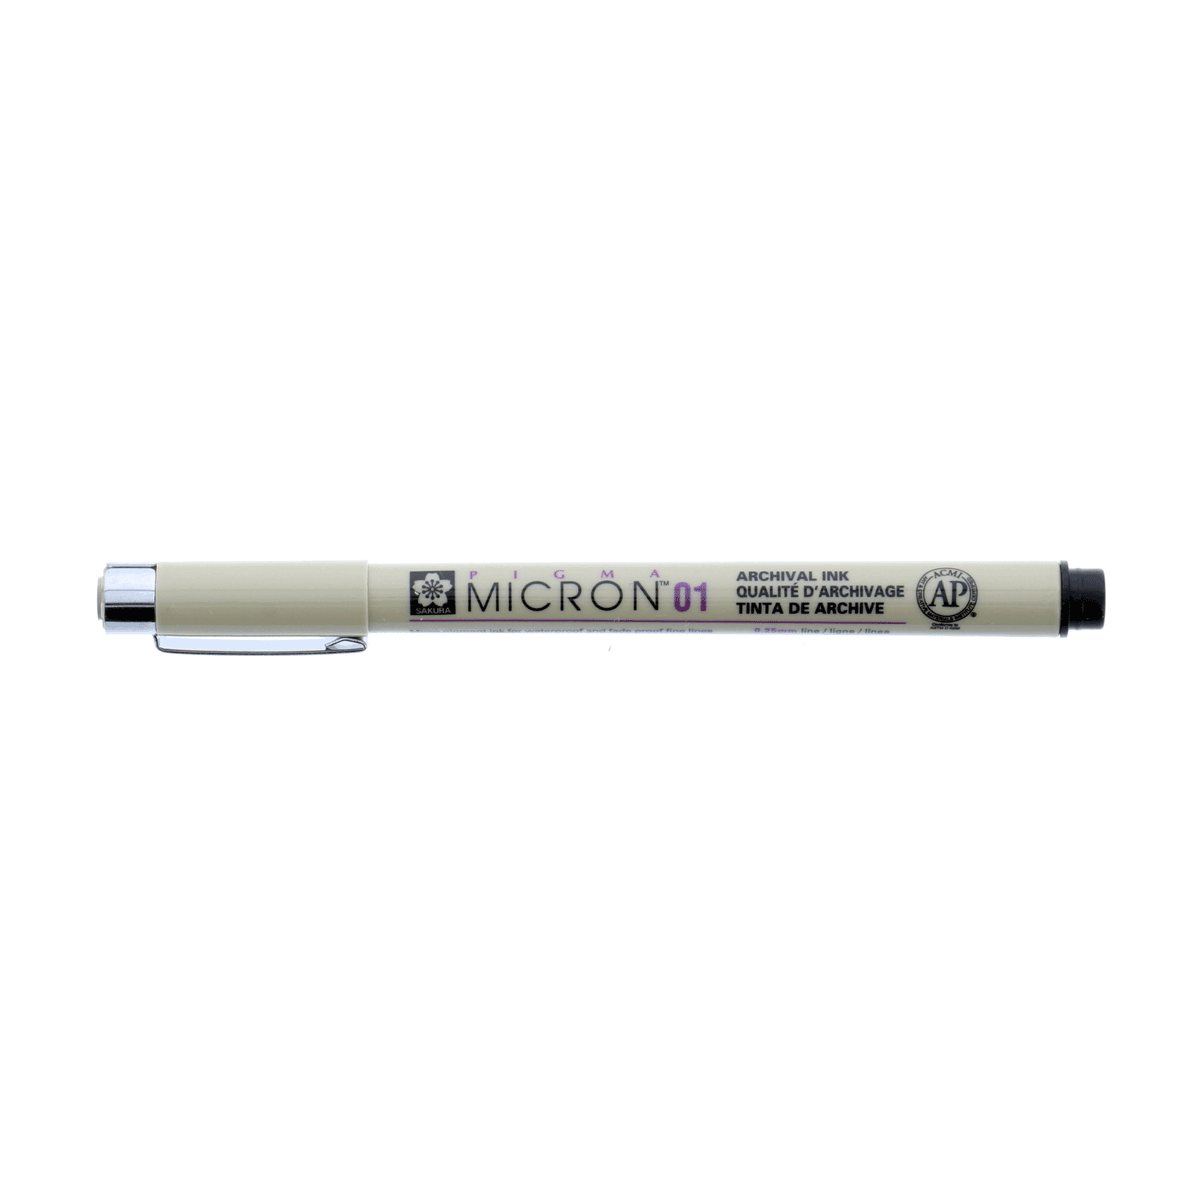 Micron Pigma Pen - Black 01 .25mm Line